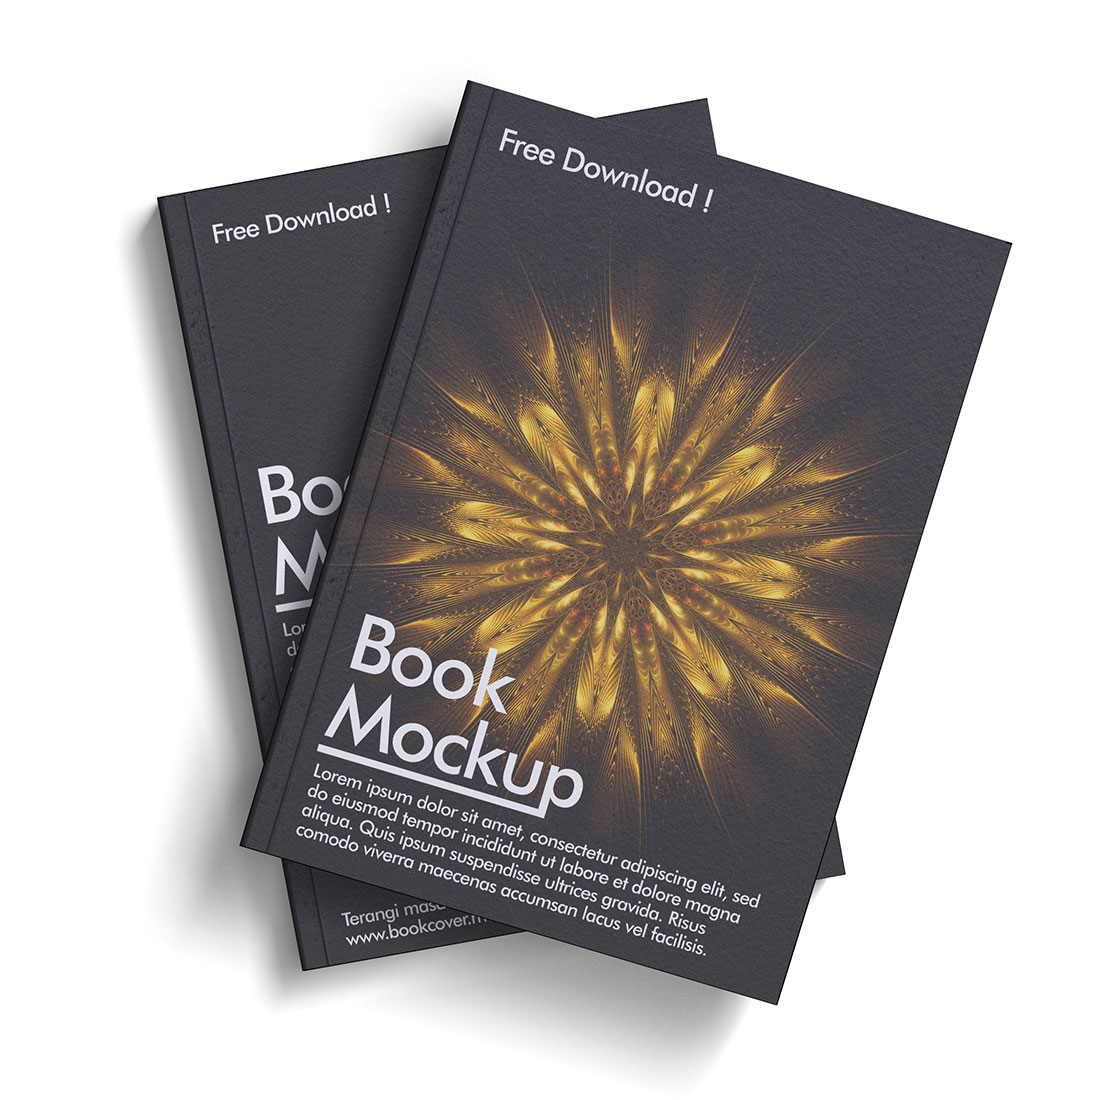 Book Mockup Bundles Full Editable cover image.